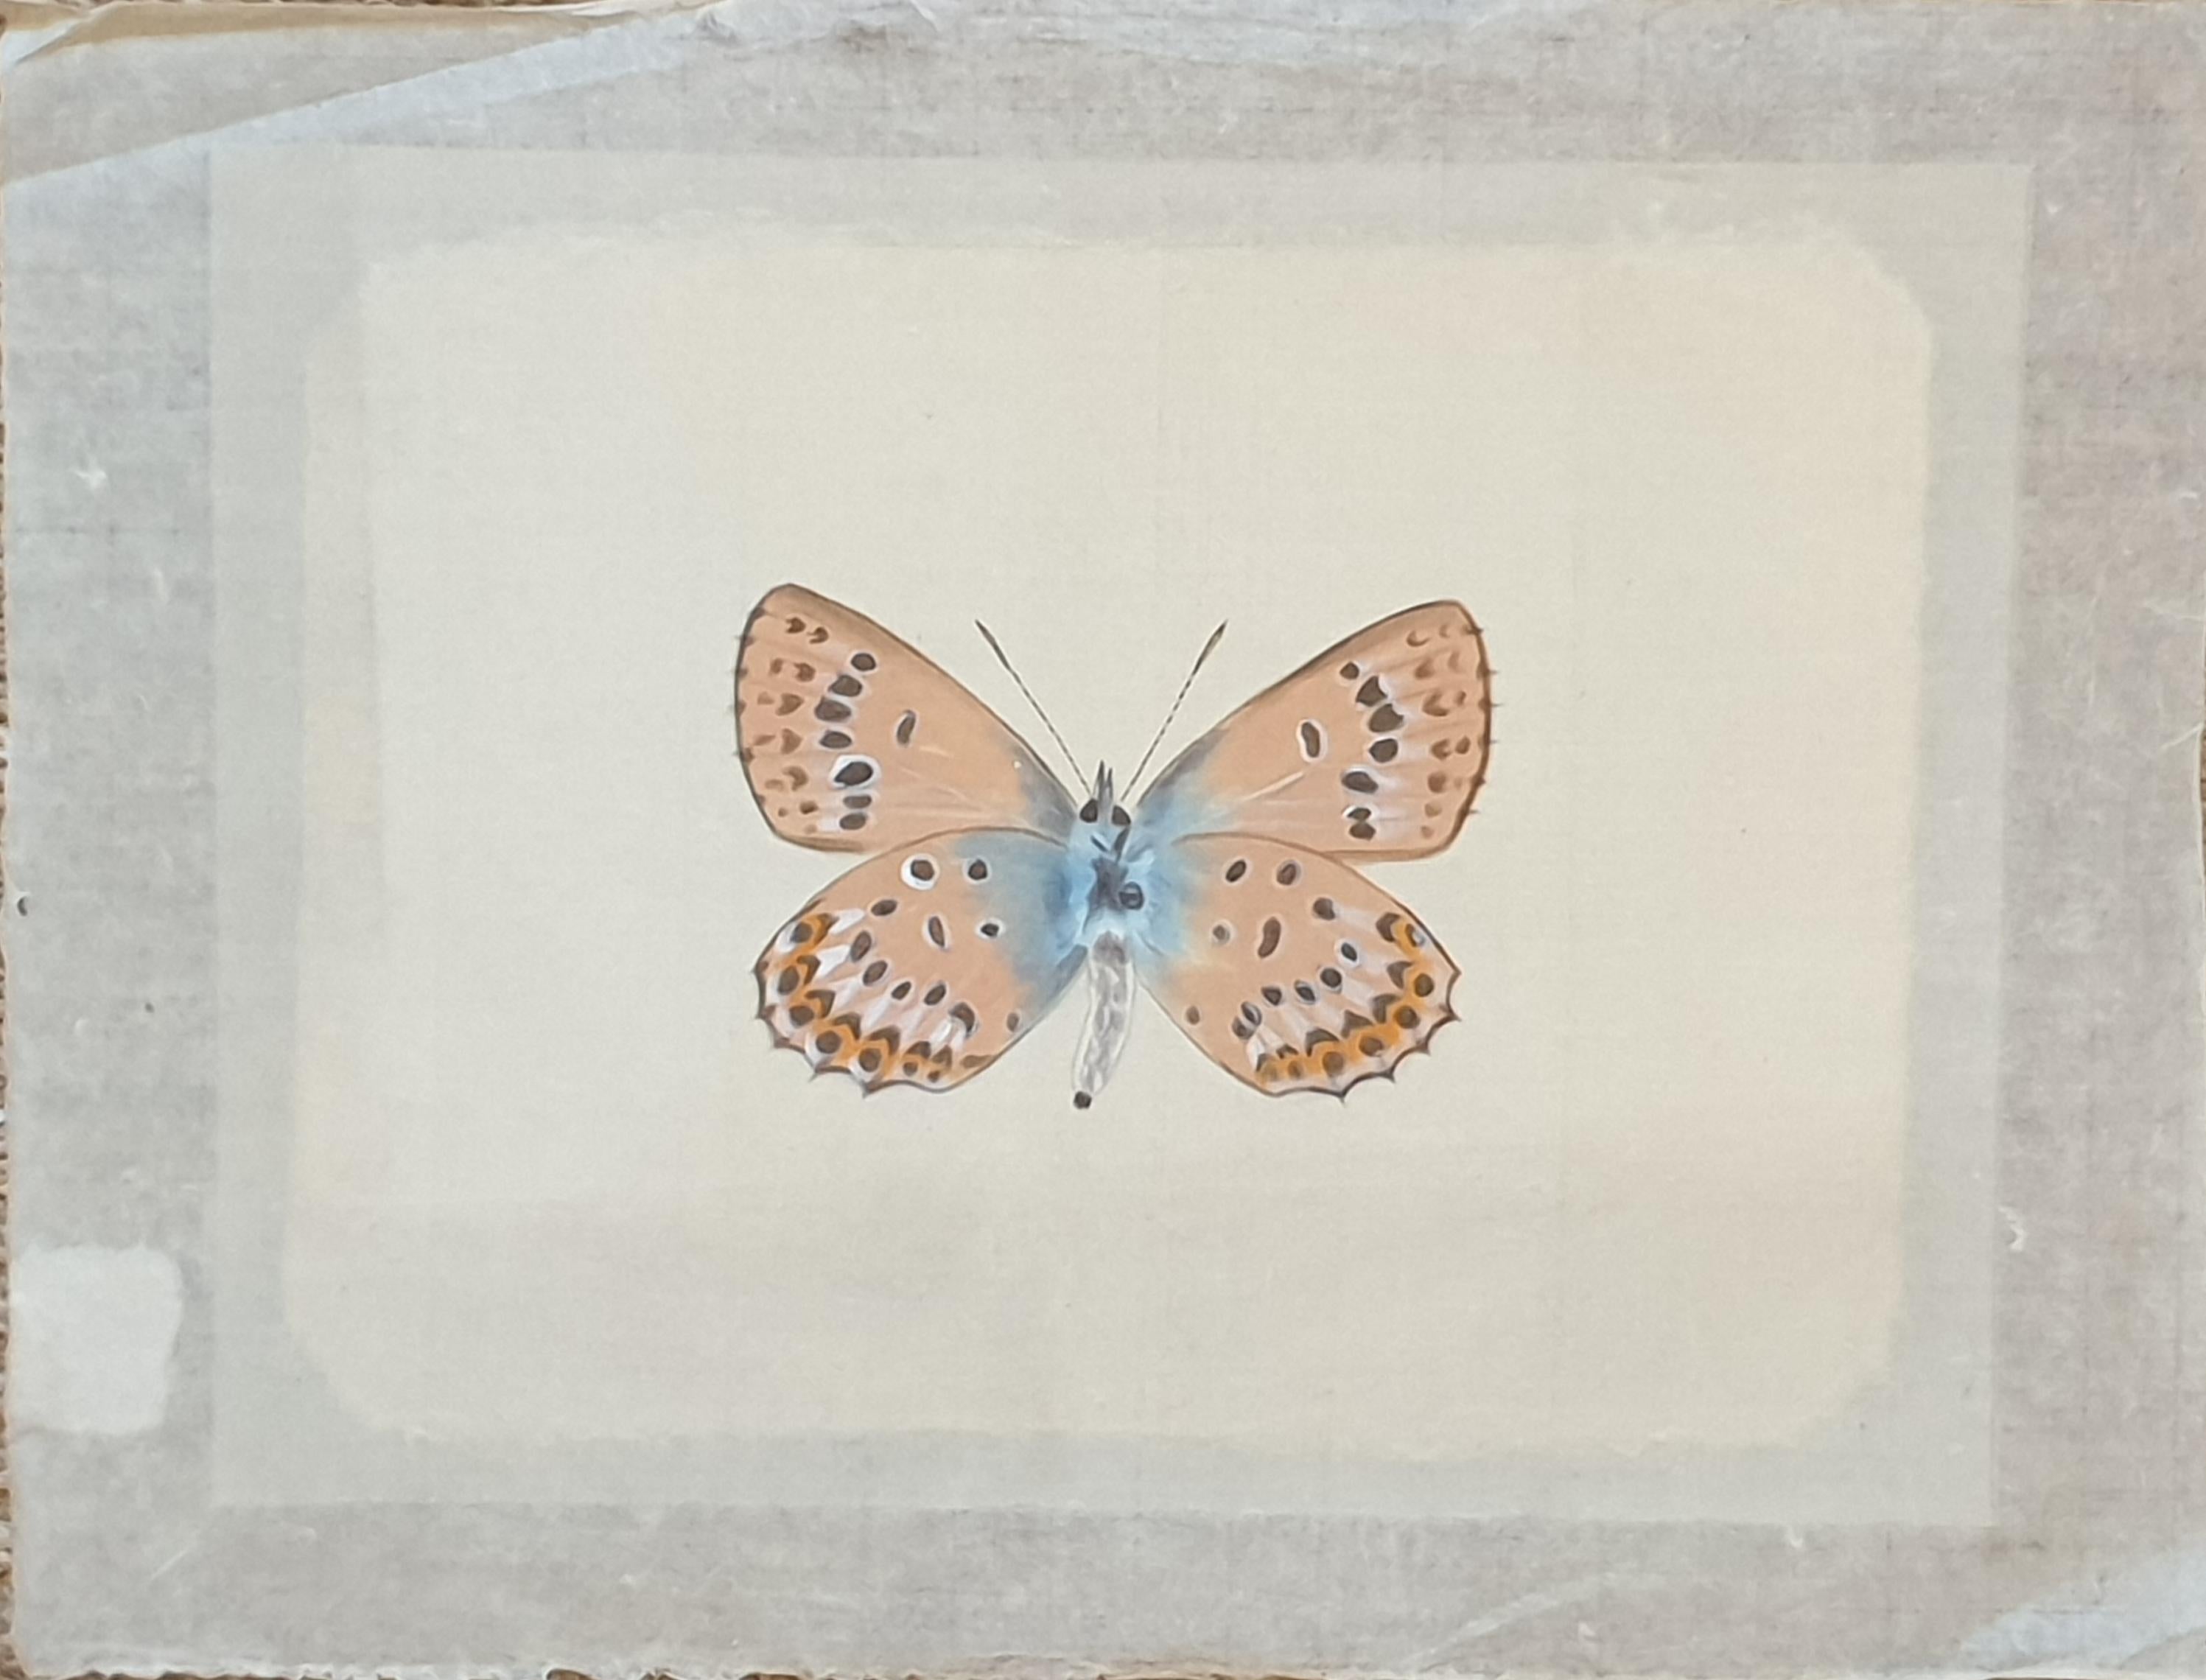 Étude d'un papillon, aquarelle sur soie appliquée sur papier fait main. 